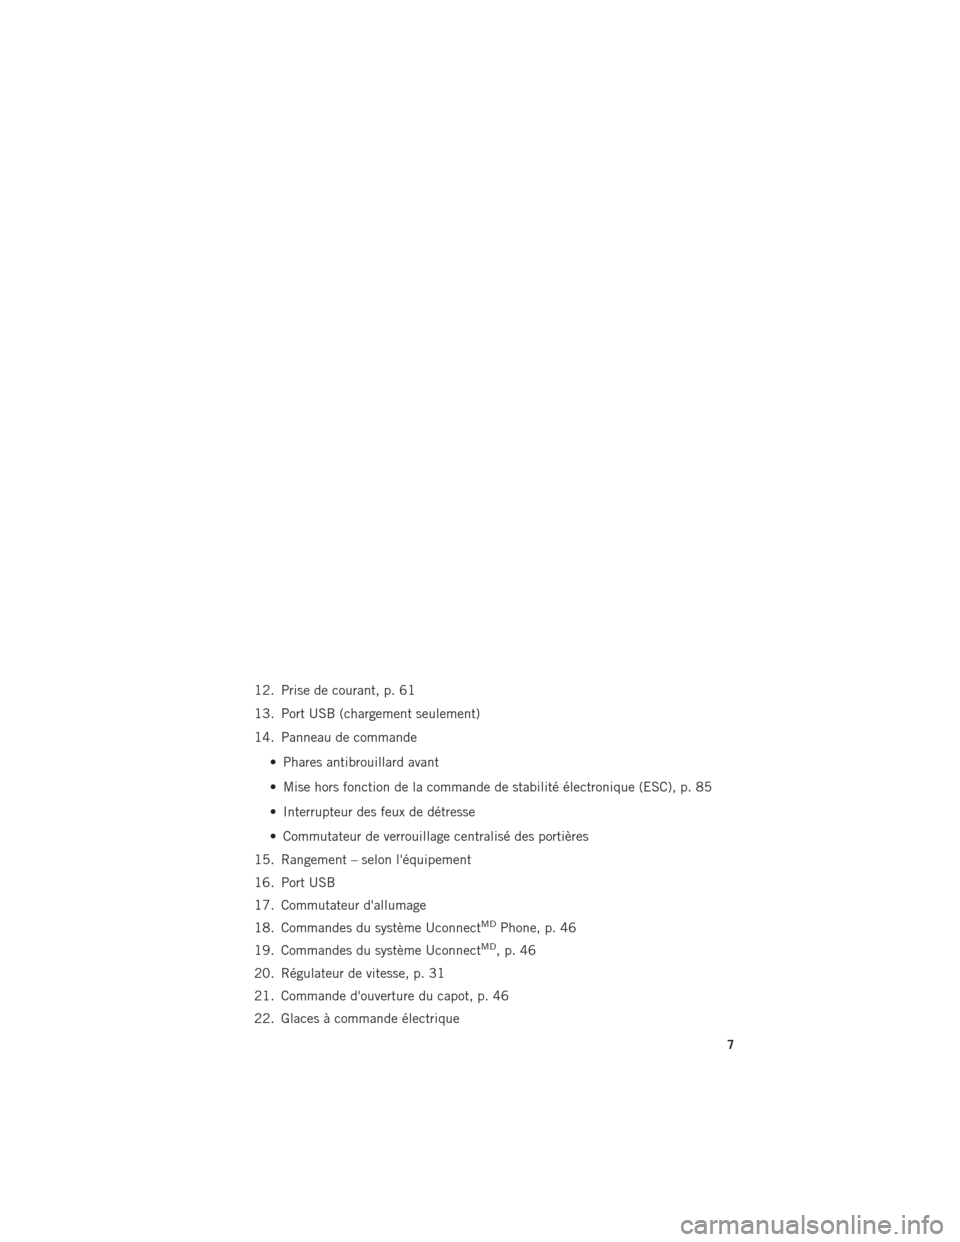 Ram ProMaster 2015  Guide dutilisateur (in French) 12. Prise de courant, p. 61
13. Port USB (chargement seulement)
14. Panneau de commande• Phares antibrouillard avant
• Mise hors fonction de la commande de stabilité électronique (ESC), p. 85
�